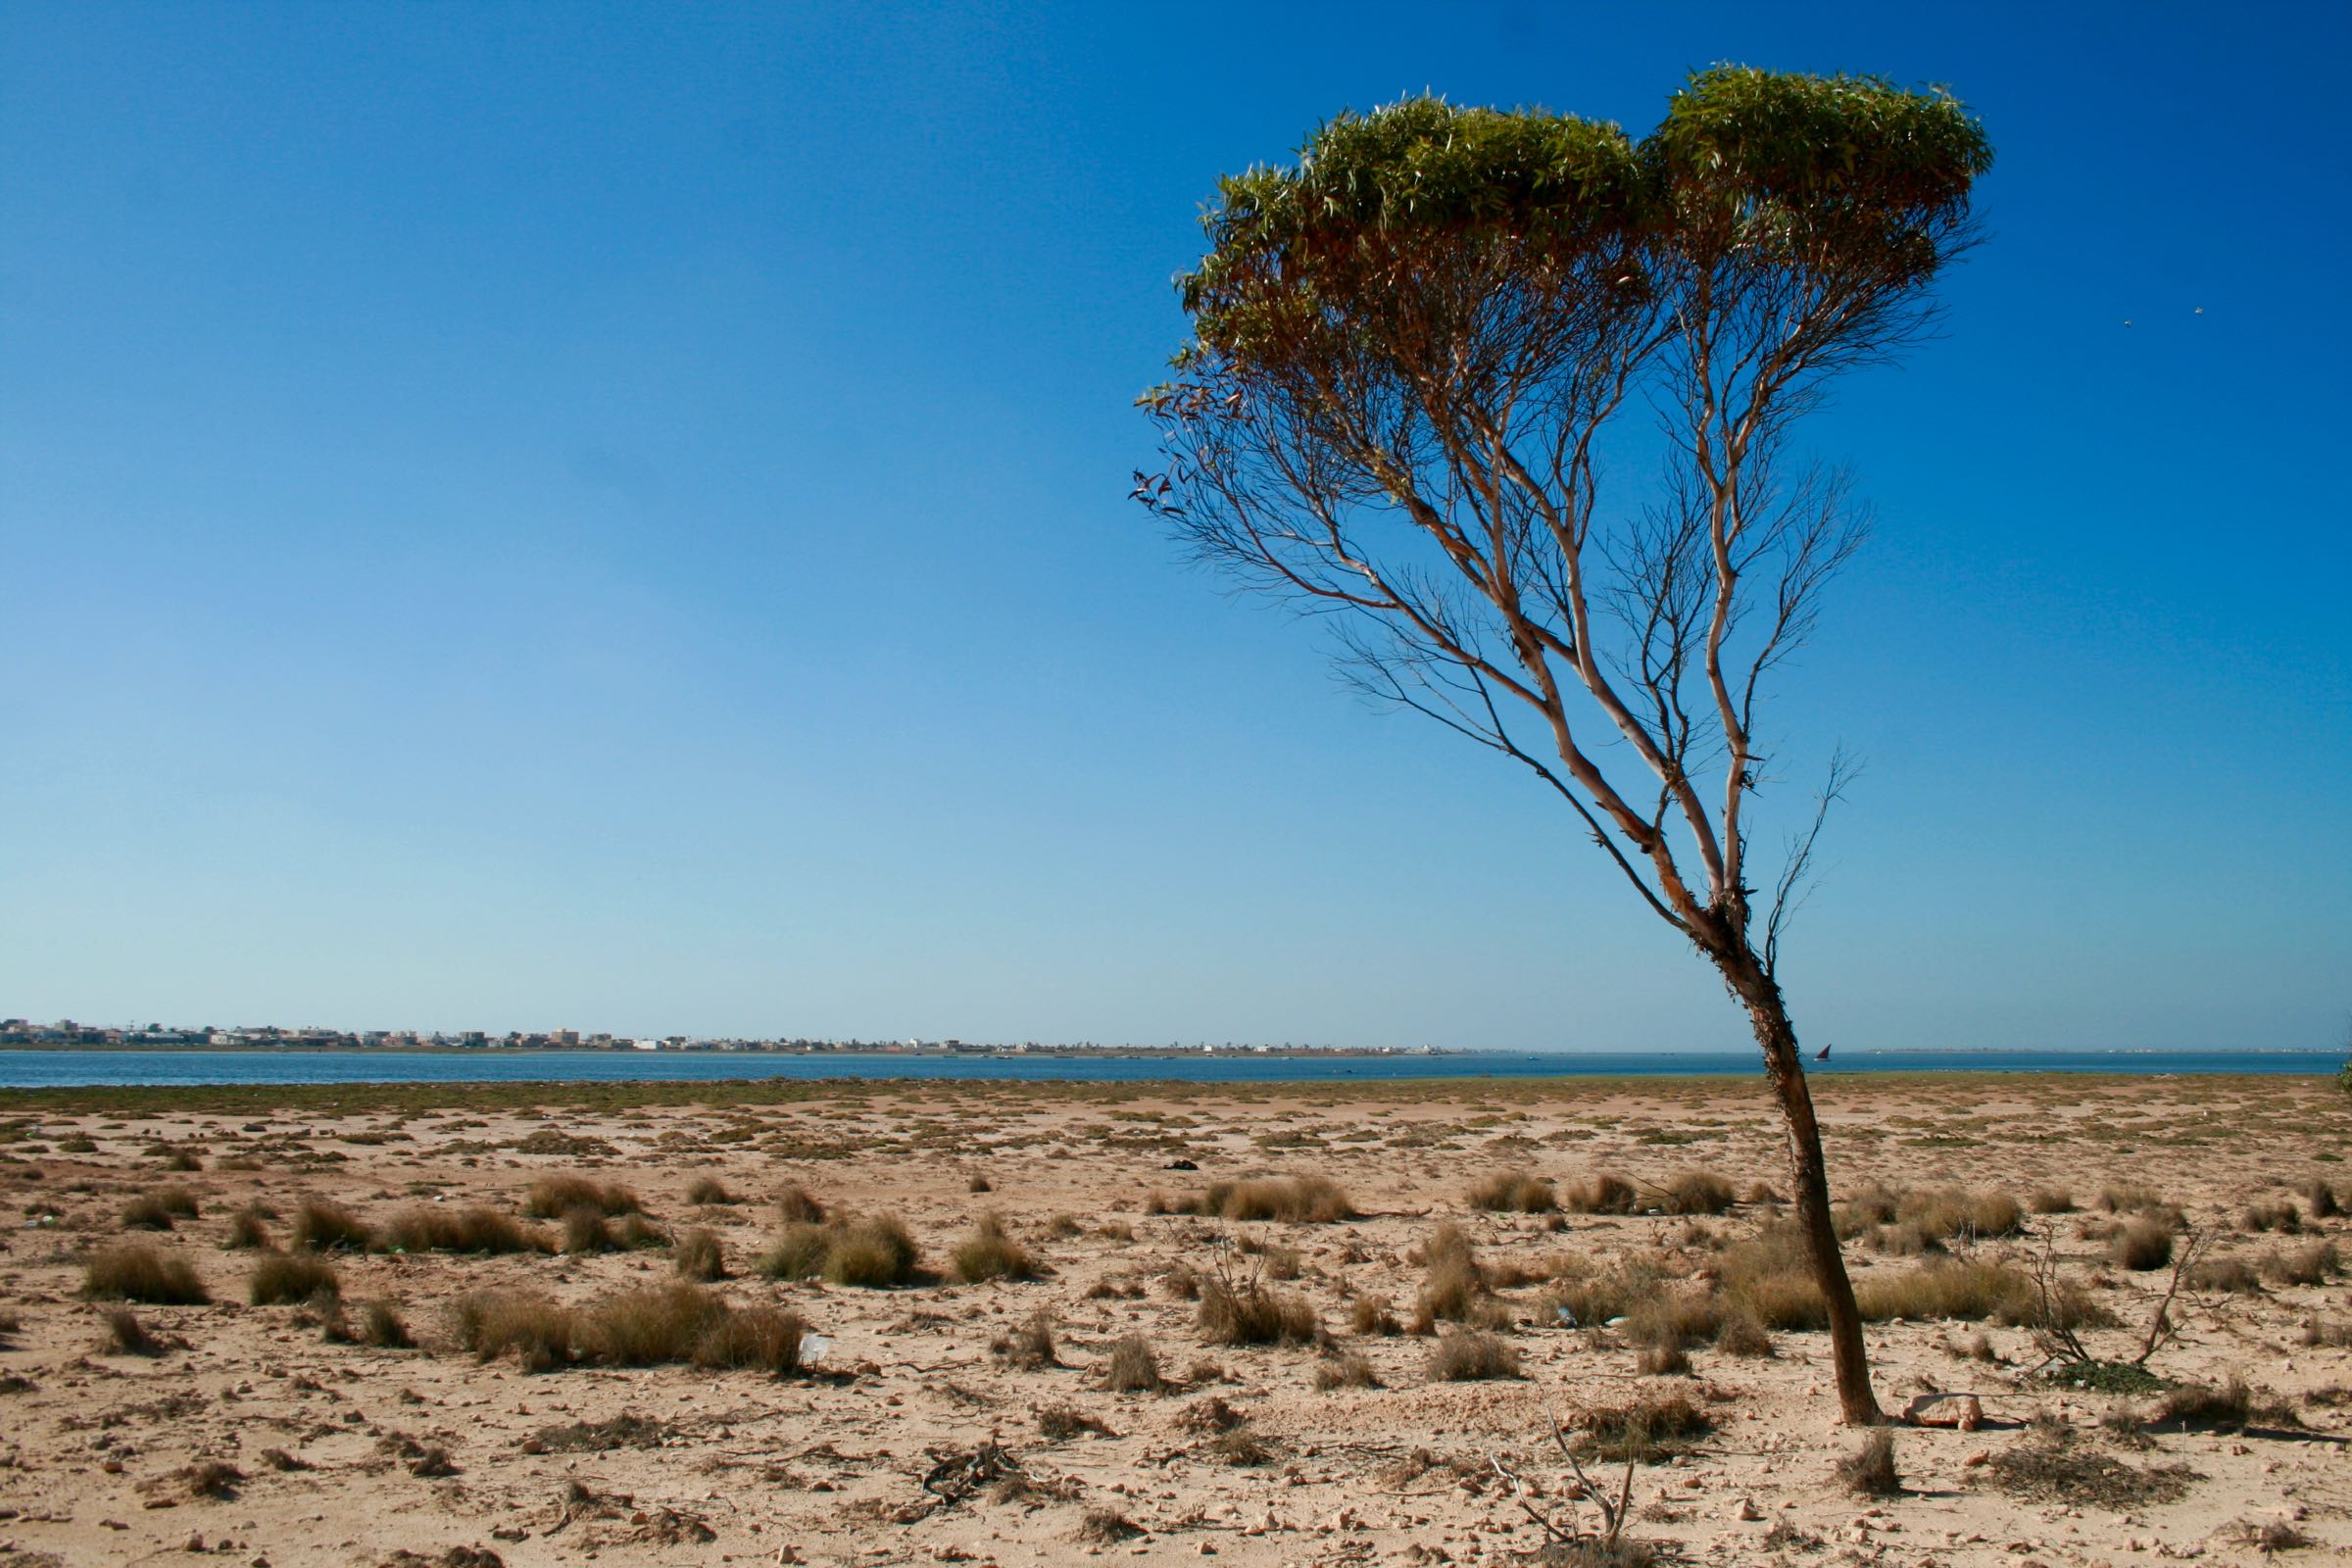 Baum auf den Kerkenna-Inseln, Tunesien